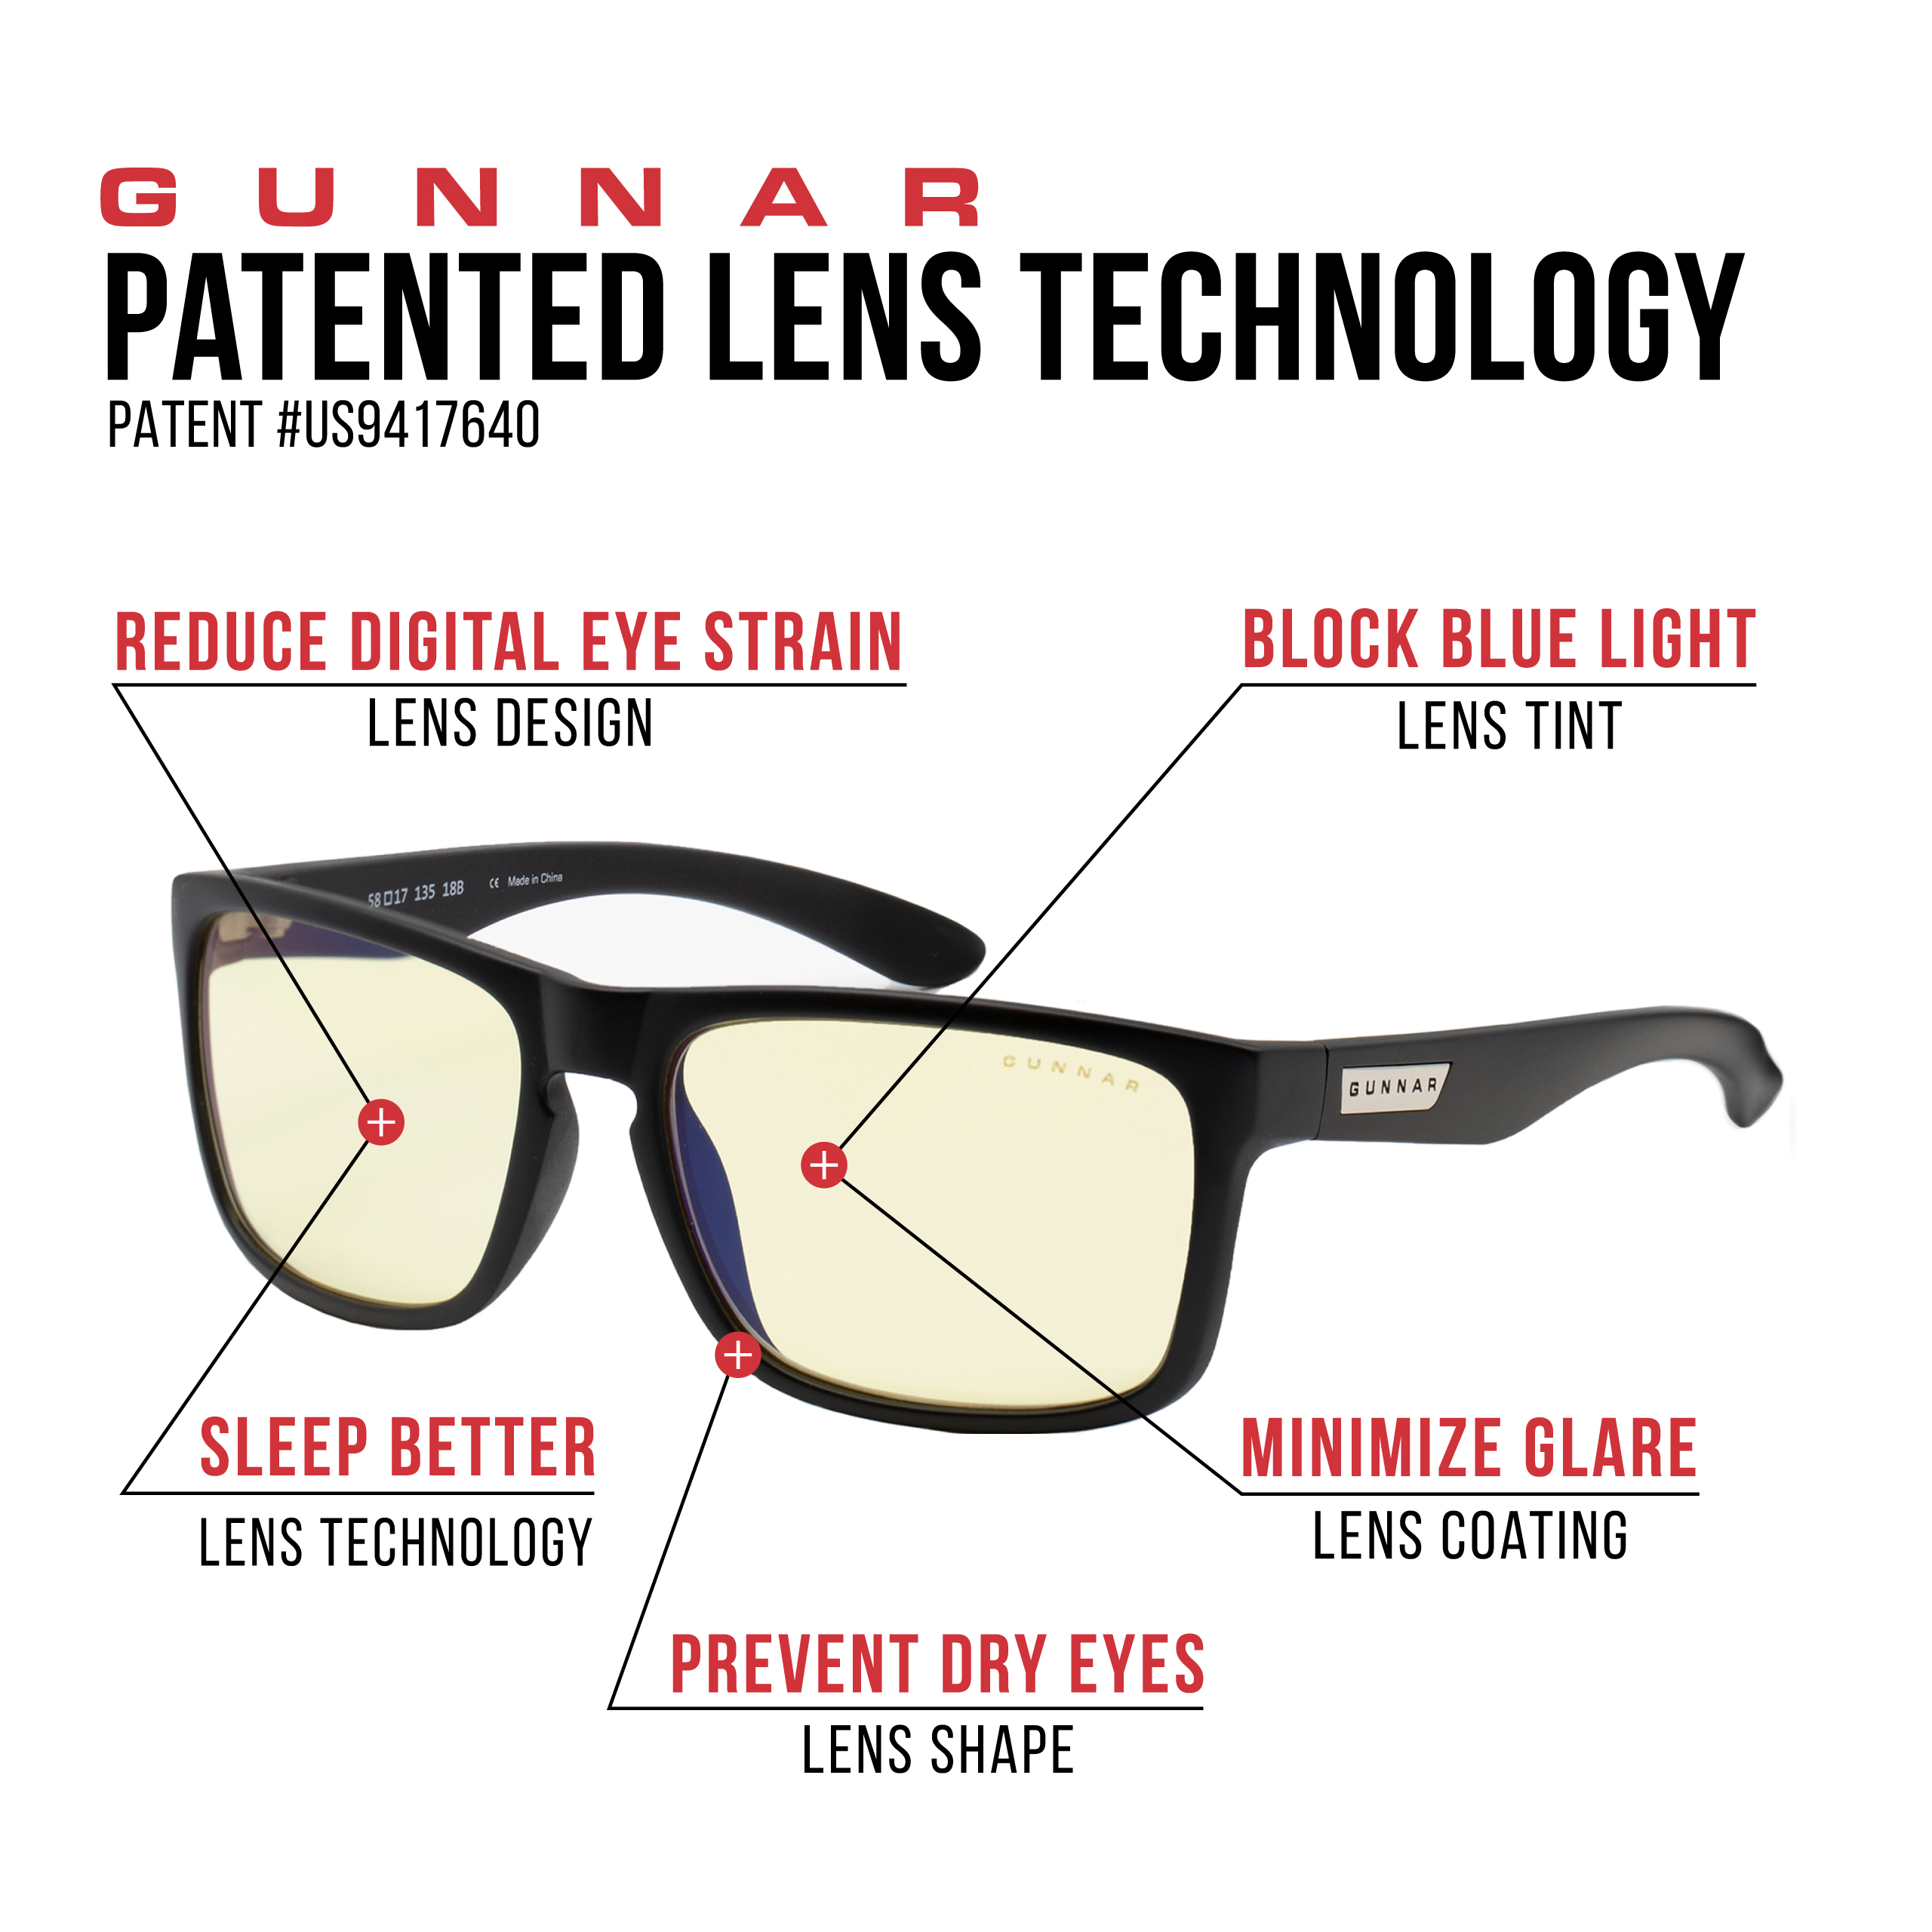 GUNNAR Intercept, Onyx Rahmen, Gaming UV-Schutz, Brille + Blaulichtfilter, Tönung- Amber Stärke Premium, 2.5